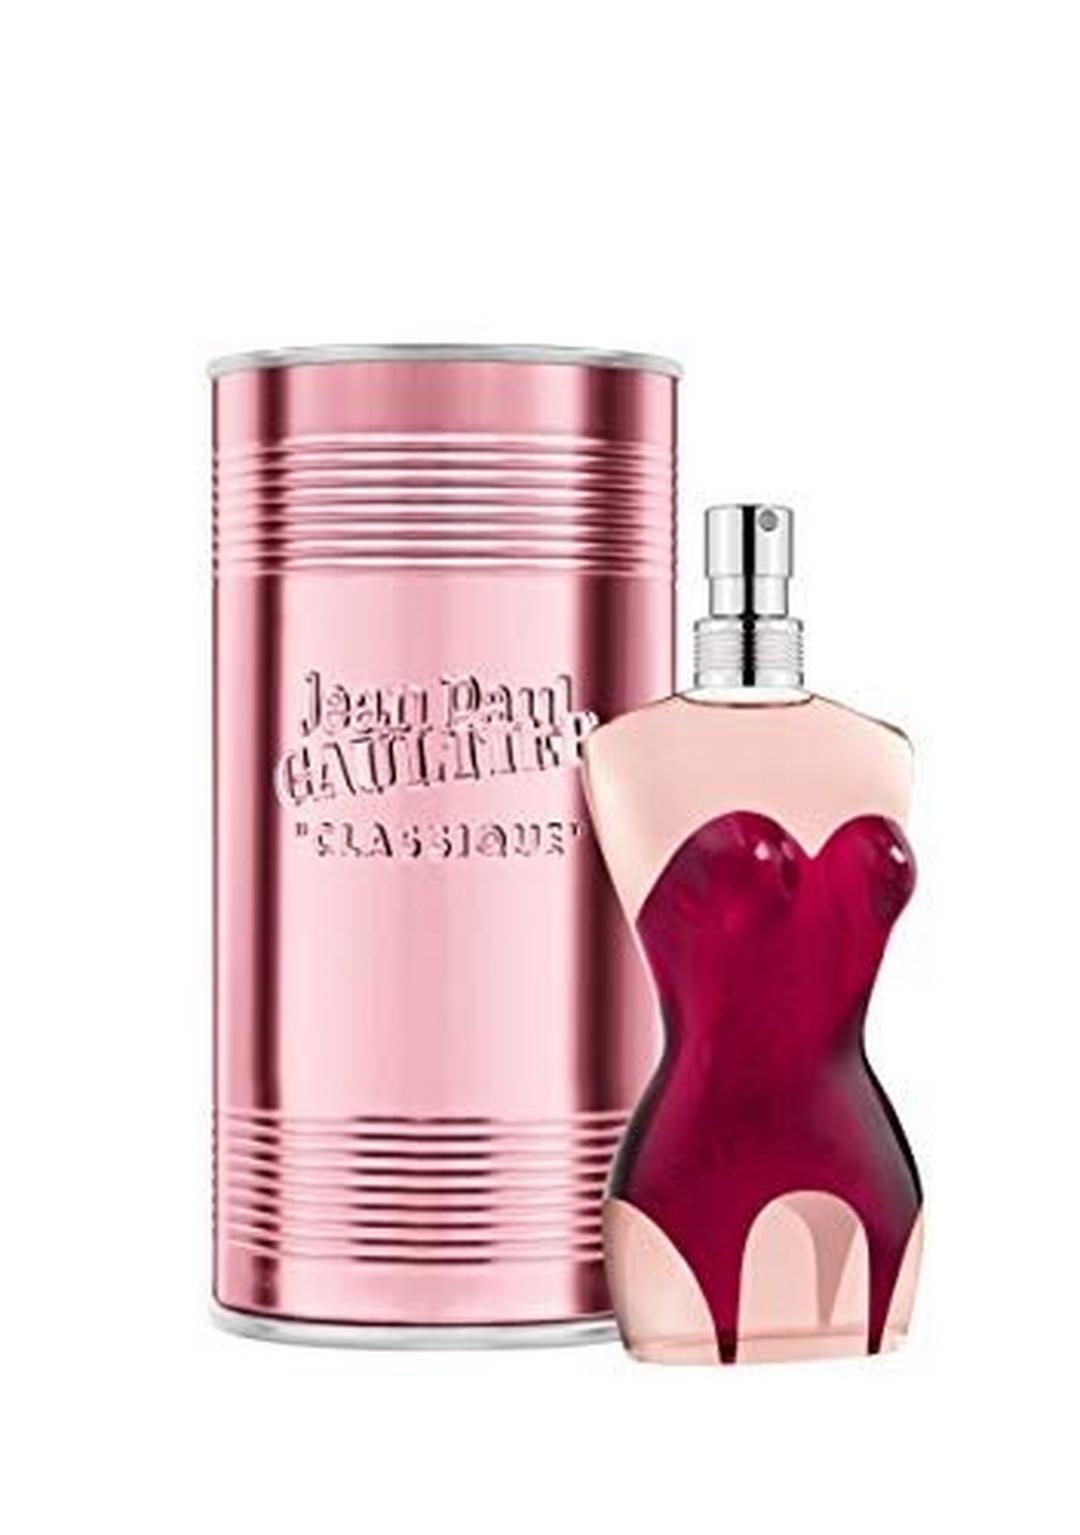 Jean Paul Gaultier Classique for Women Eau De Parfum 100ml